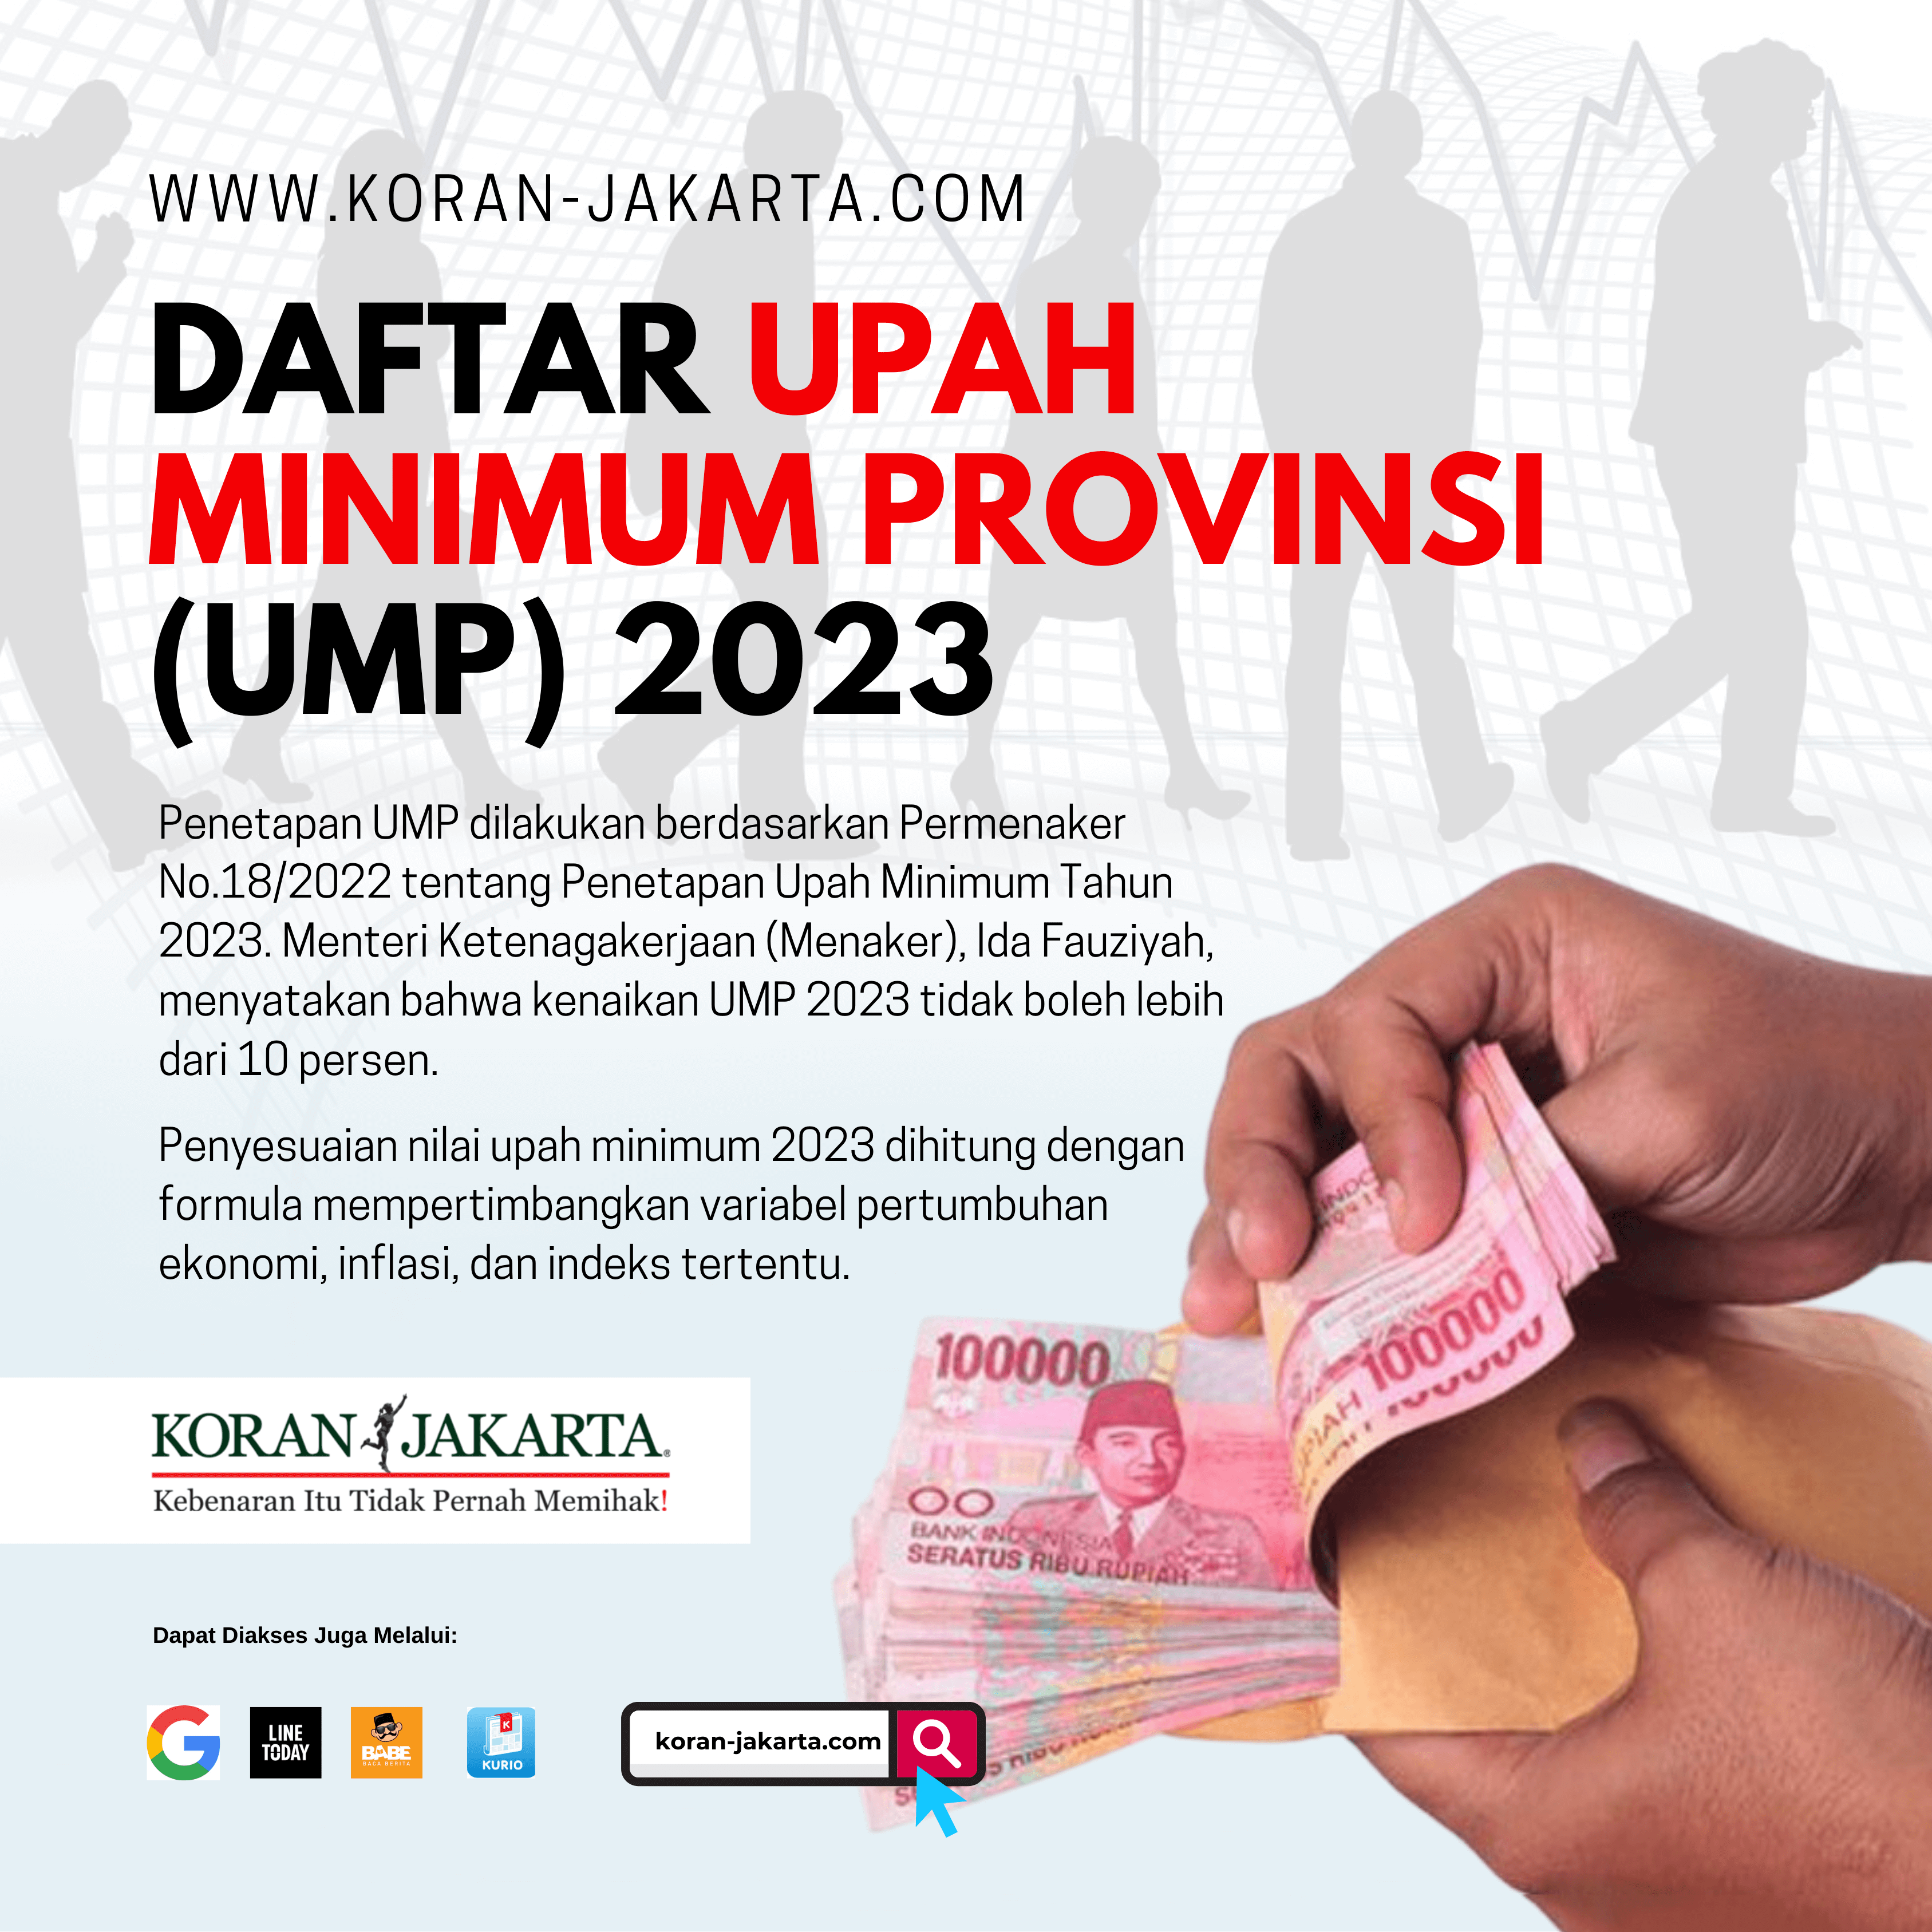 Daftar Upah Minimum Provinsi (UMP) 2022